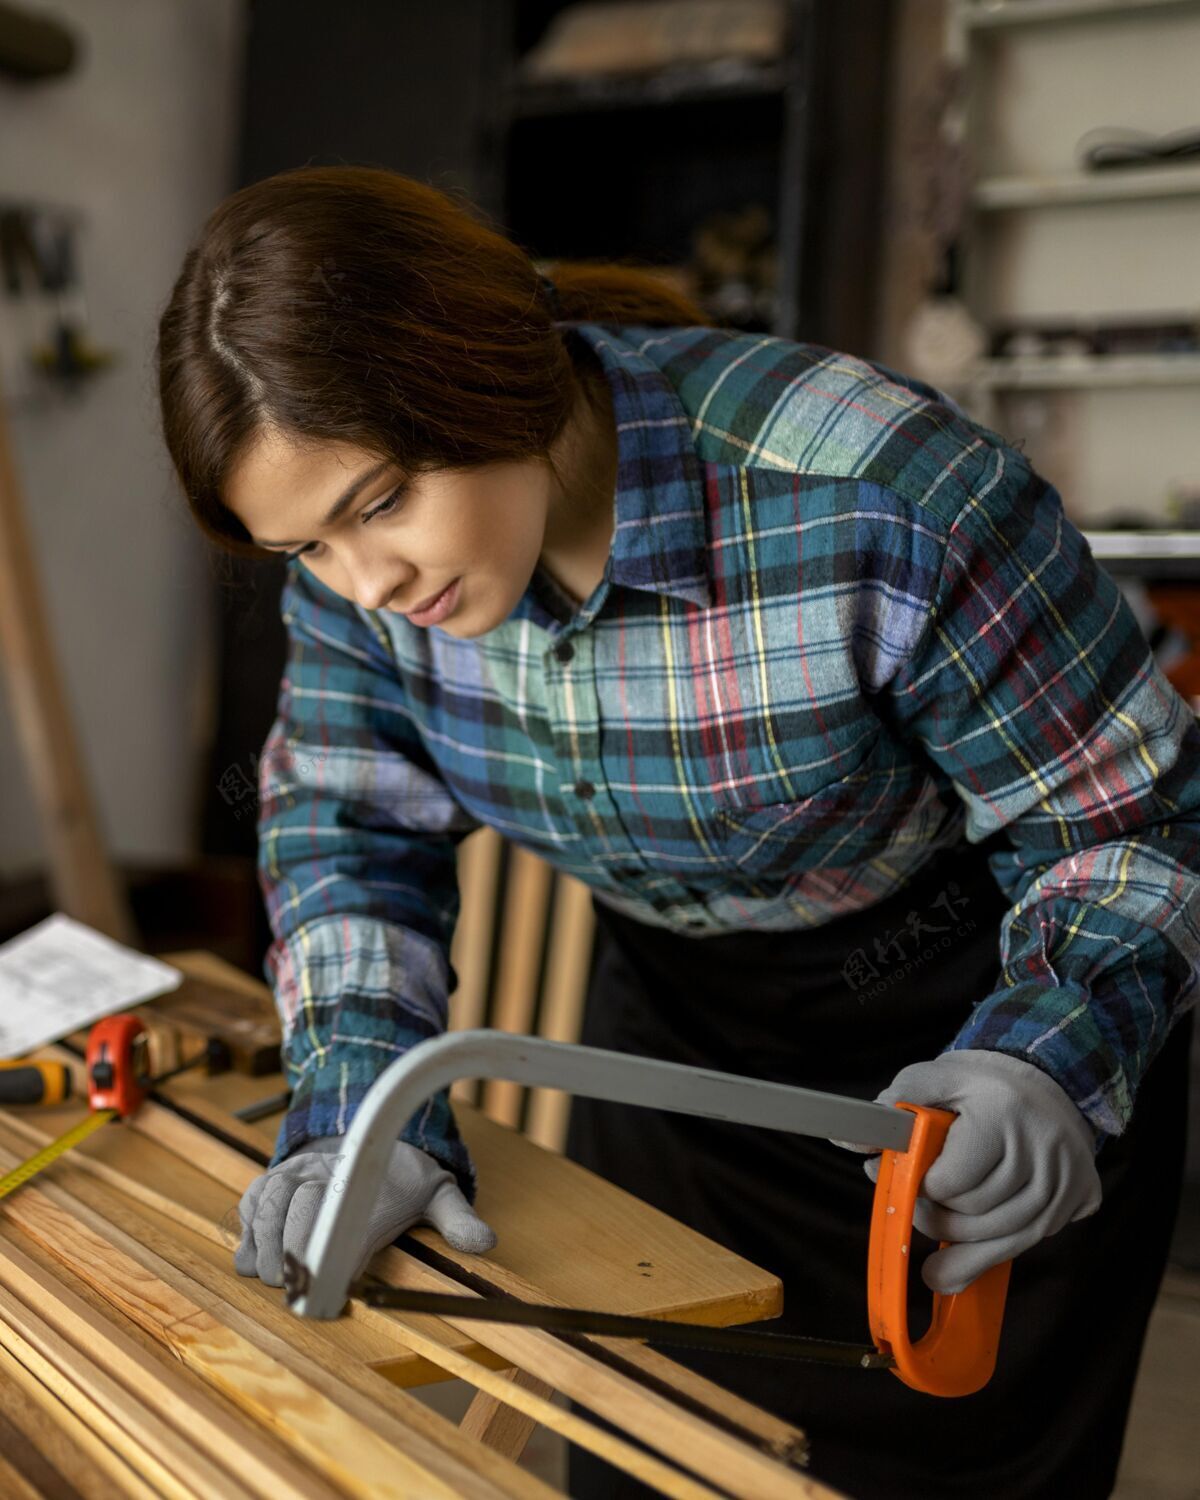 锯女人用锯切工作事件木板